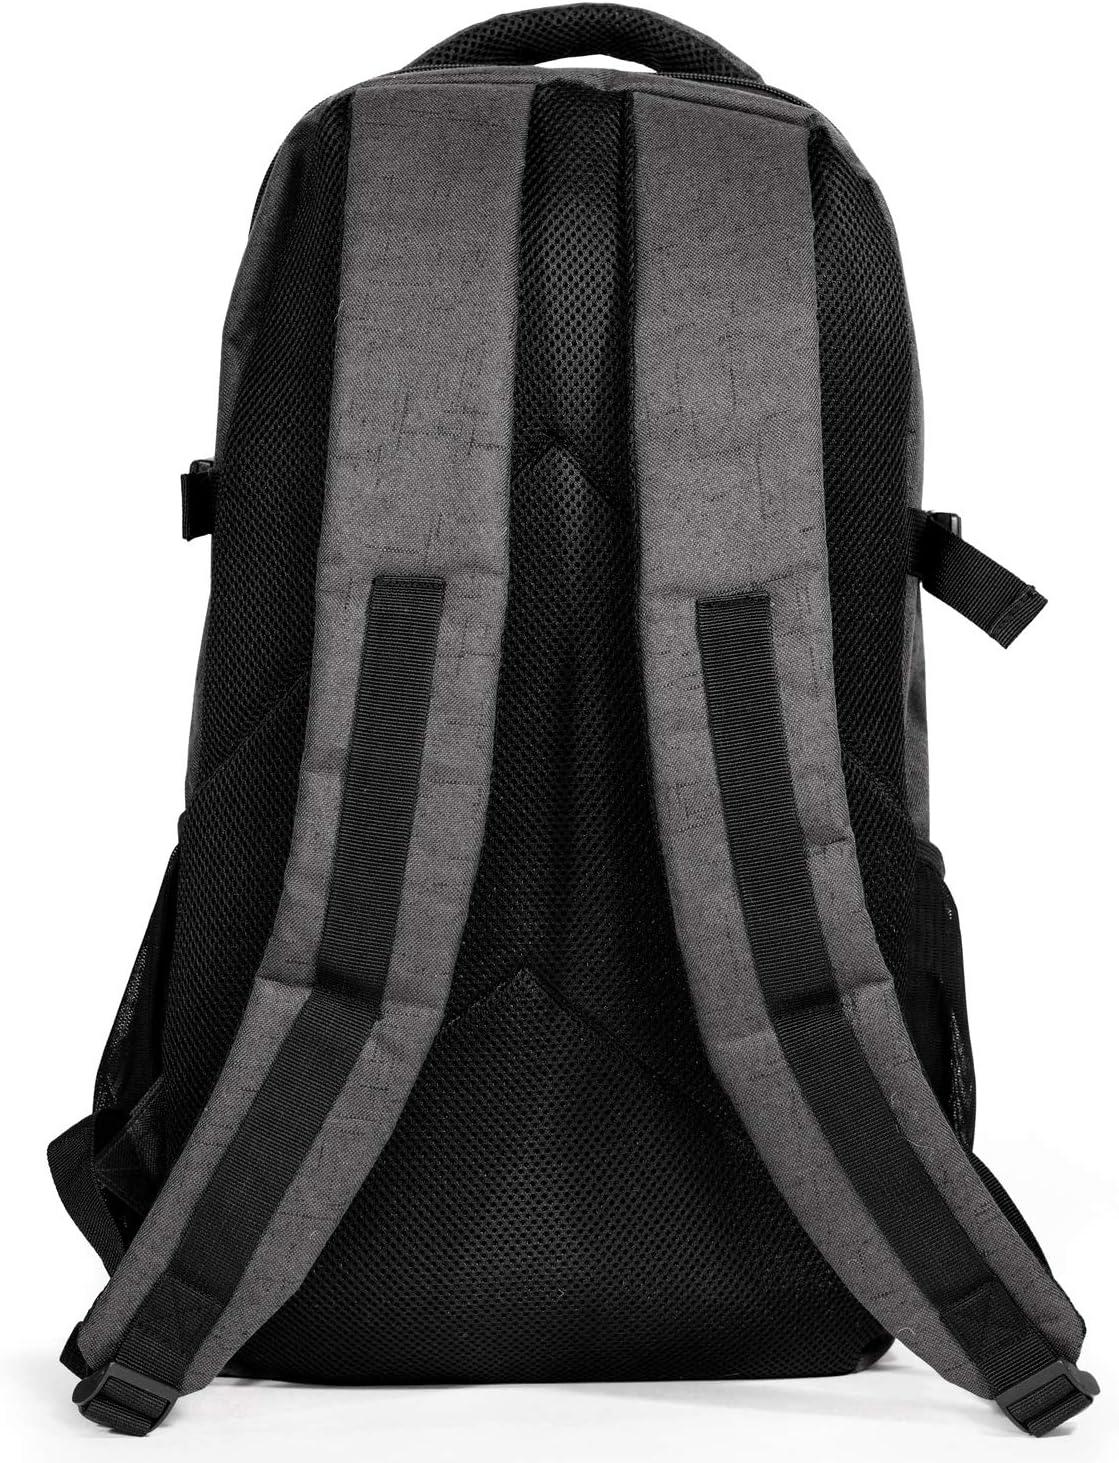 AURORAE Yoga Multi Purpose Backpack, Model 2.0. Mat Sold